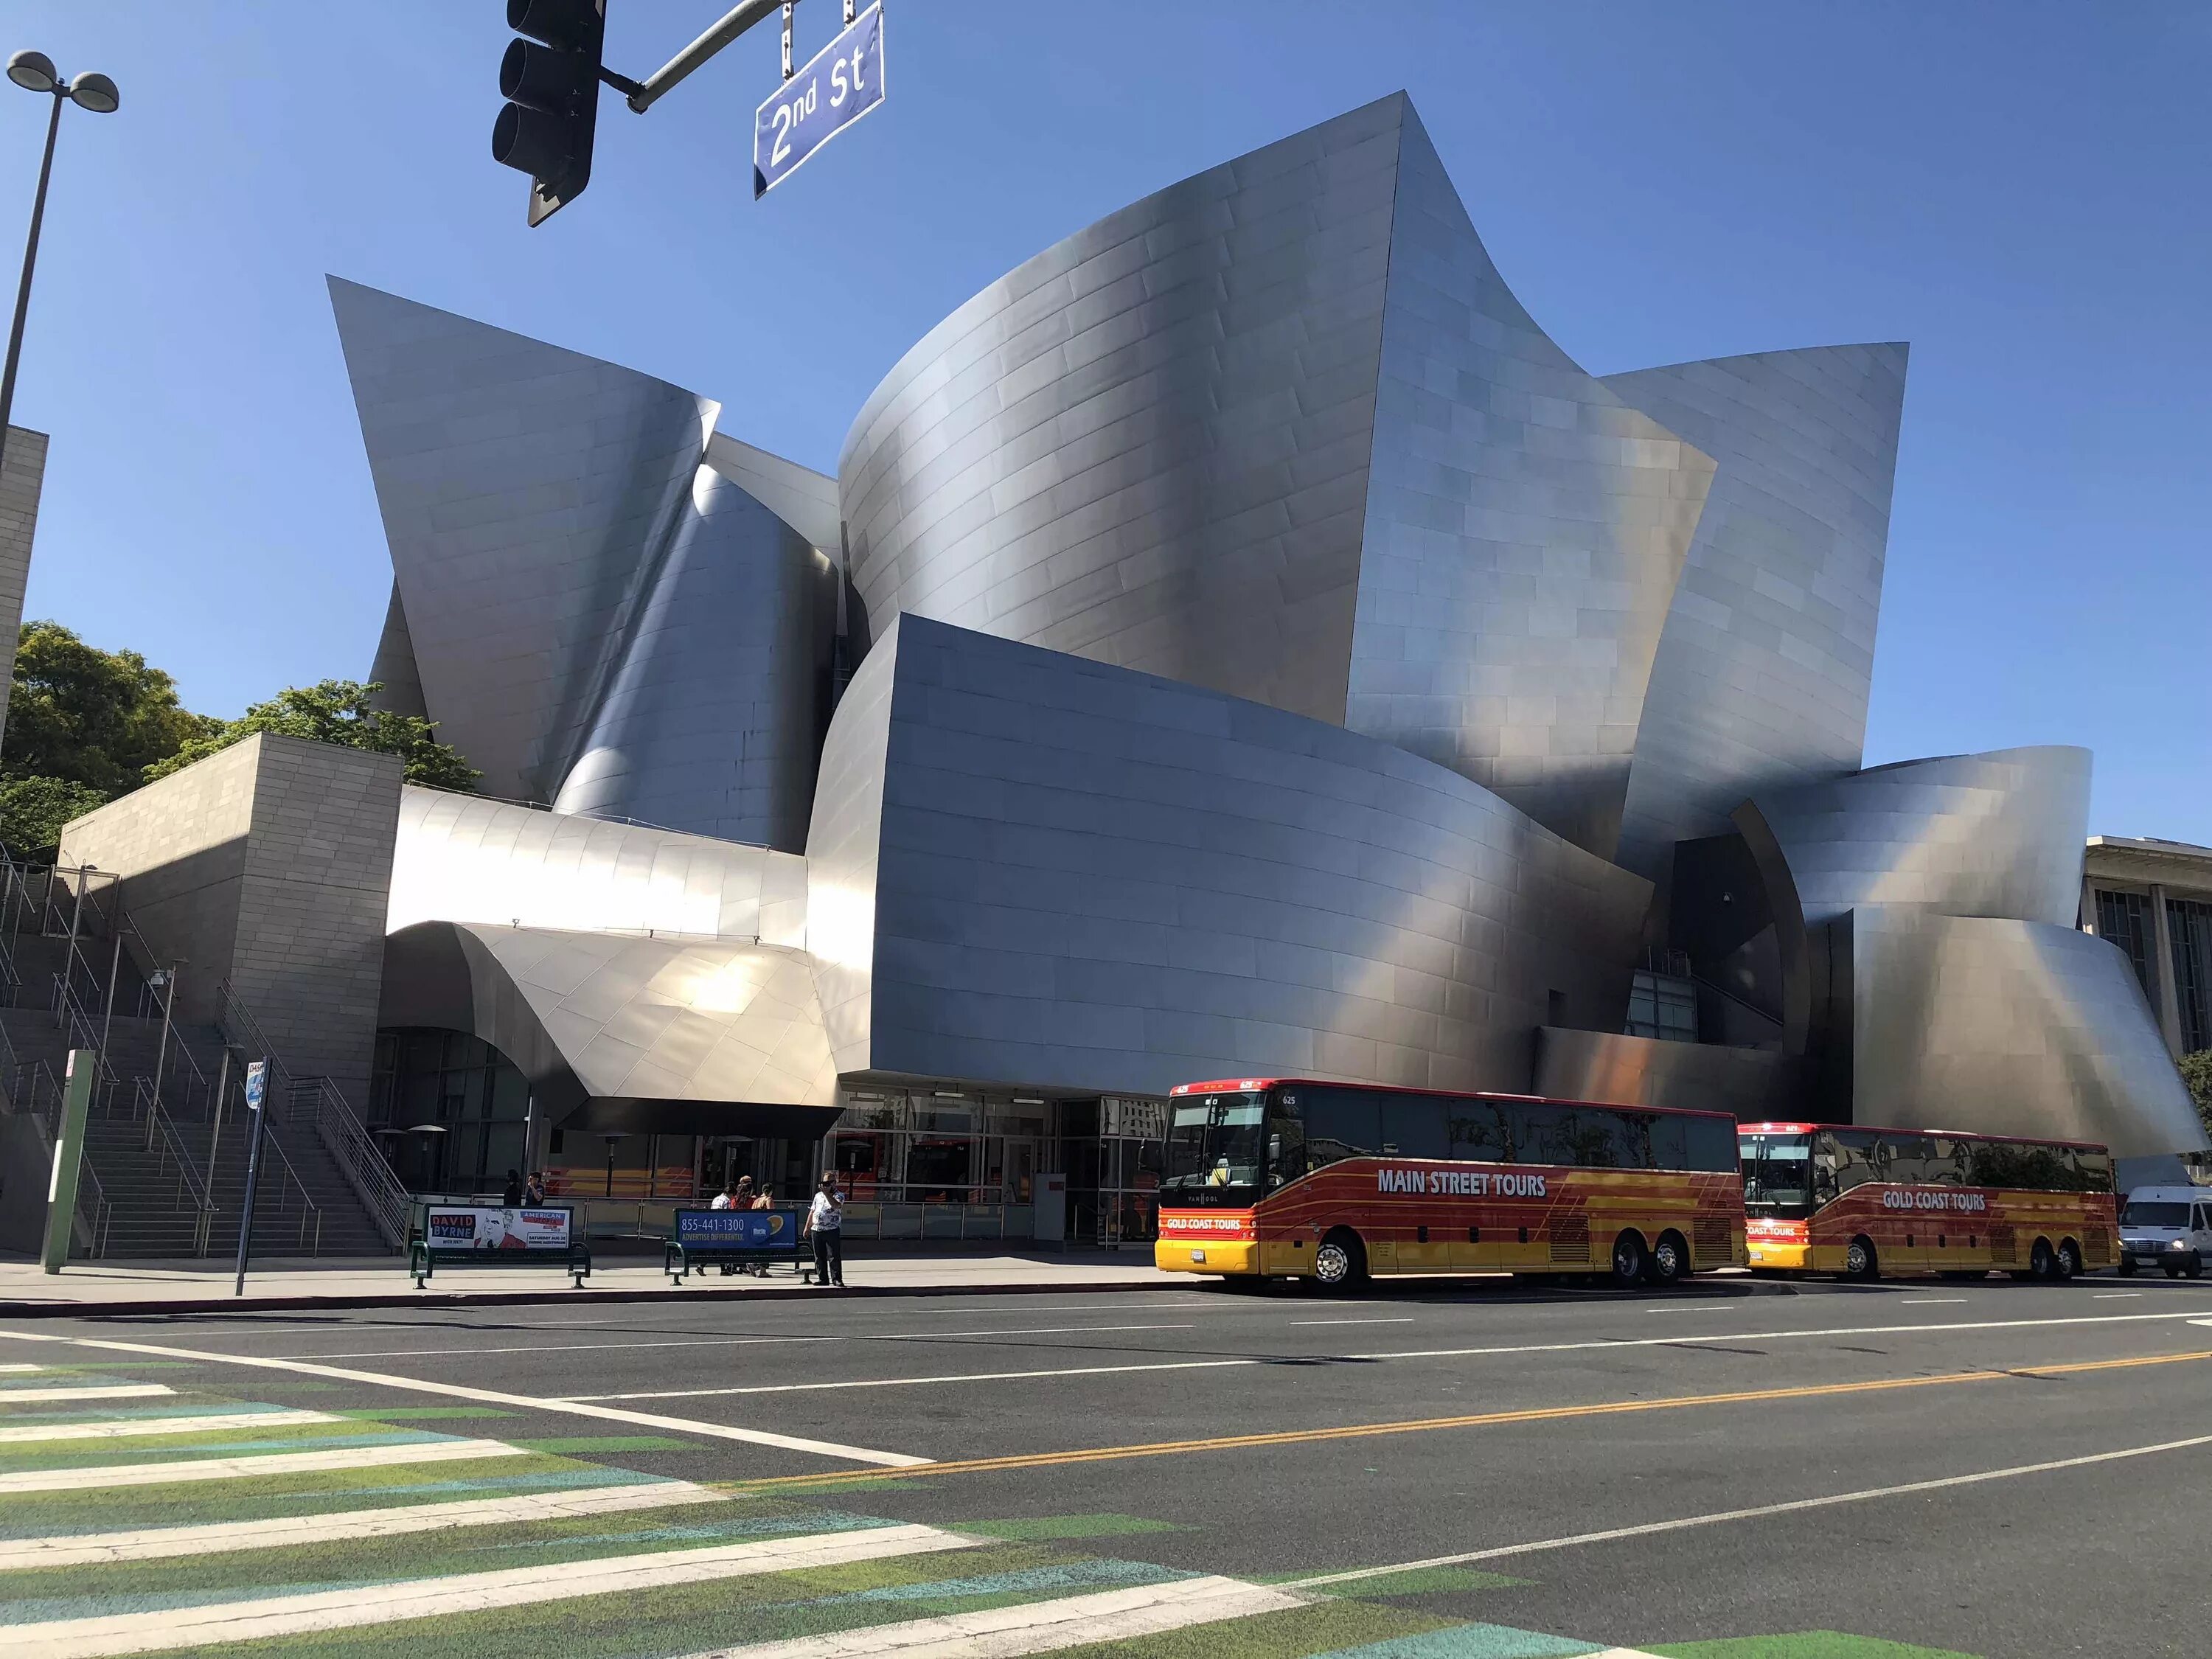 Концертный зал «Дисней» в Лос-Анджелес. Концертный зал Уолта Диснея в Лос-Анджелесе. Фрэнк Гери концертный зал Уолта Диснея. Концертный зал Уолта Диснея в Лос-Анджелесе архитектура. Концертный зал уолта диснея